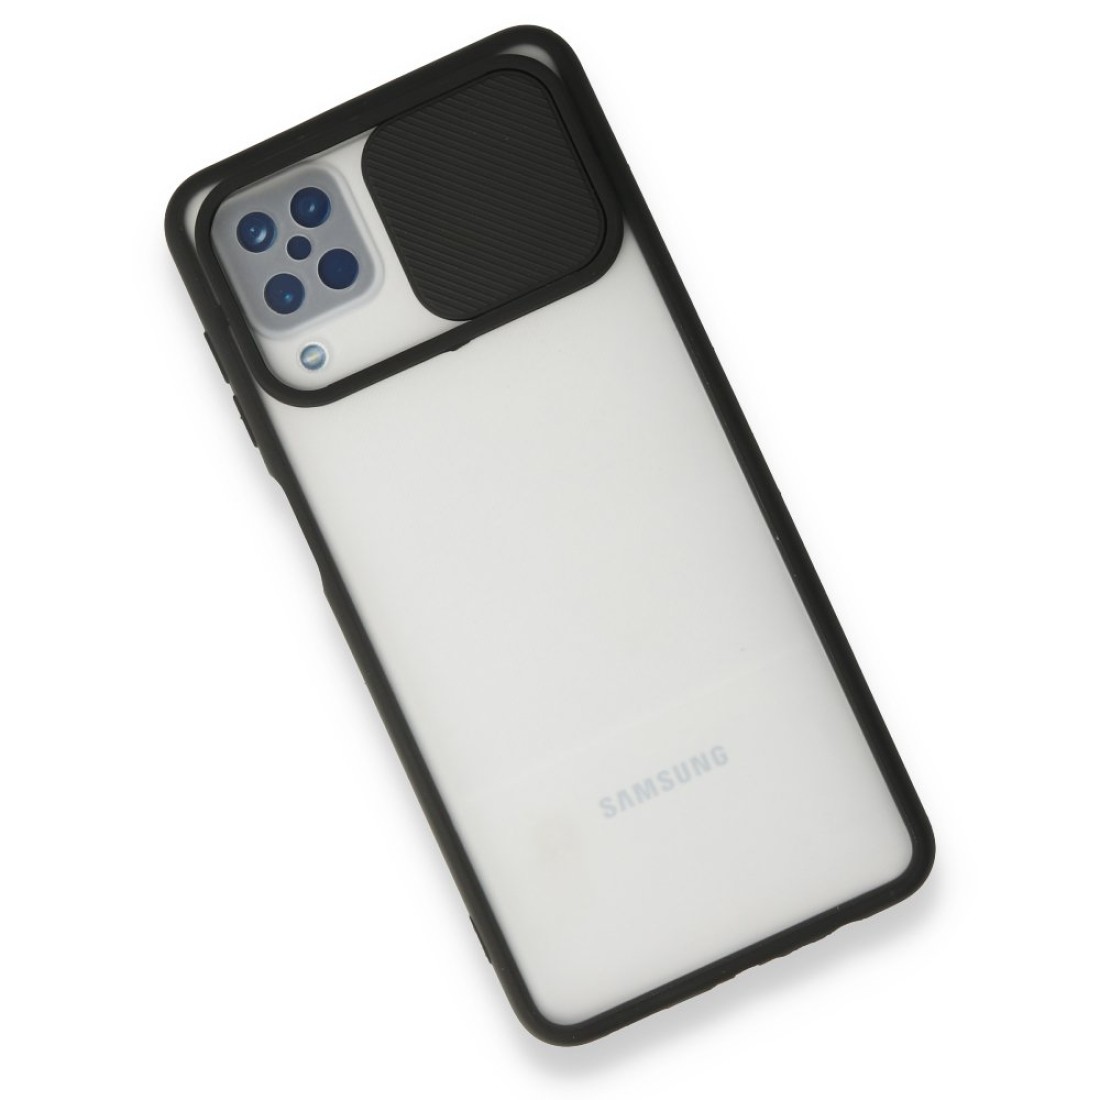 Samsung Galaxy A12 Kılıf Palm Buzlu Kamera Sürgülü Silikon - Siyah